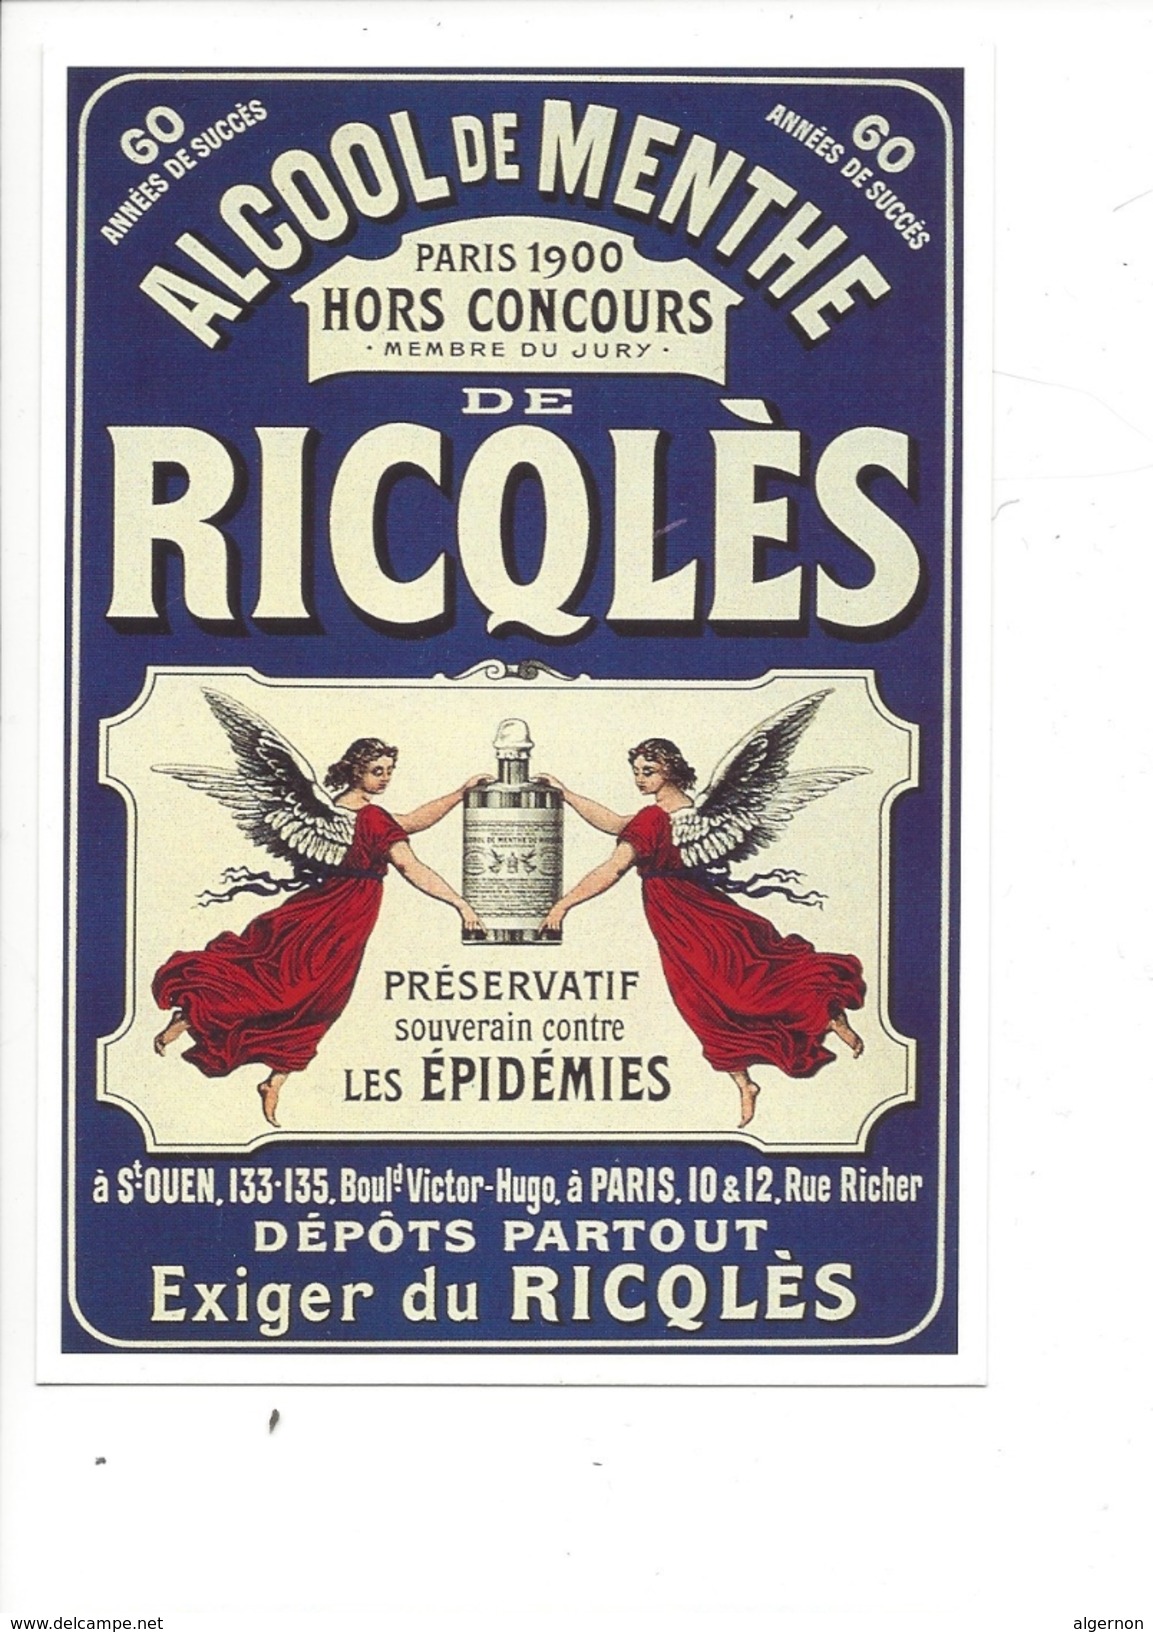 16331 - Alcool De Menthe De Ricqlès Paris 1900 Anges  Préservatif Souverain Contre Les Epidémies Reproduction D'affiche - Publicité